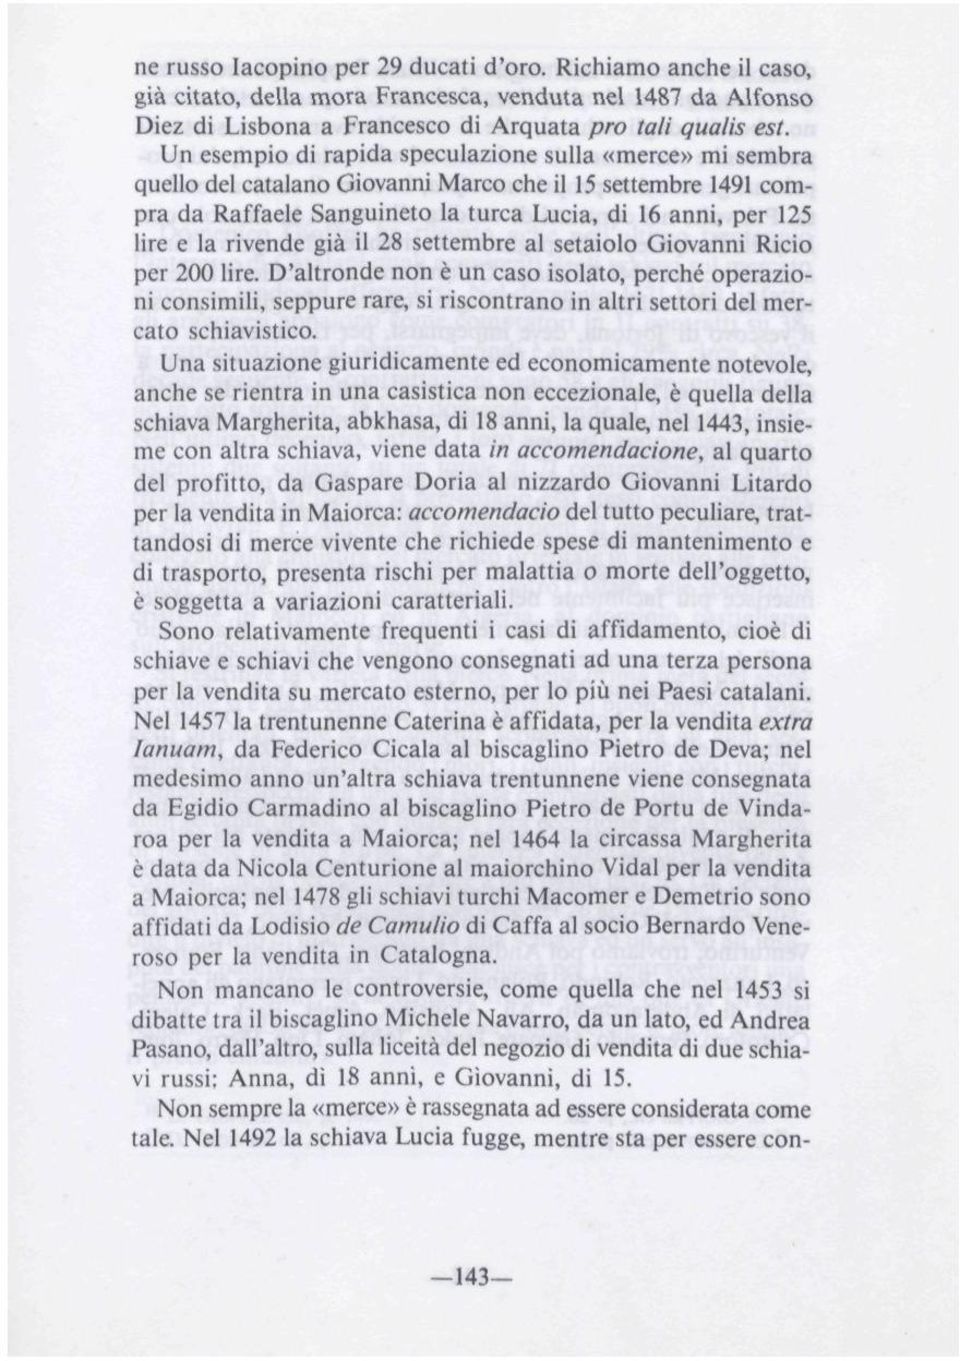 rivende giá il 28 setiembre al setaiolo Giovanni Ricio per 200 lire.